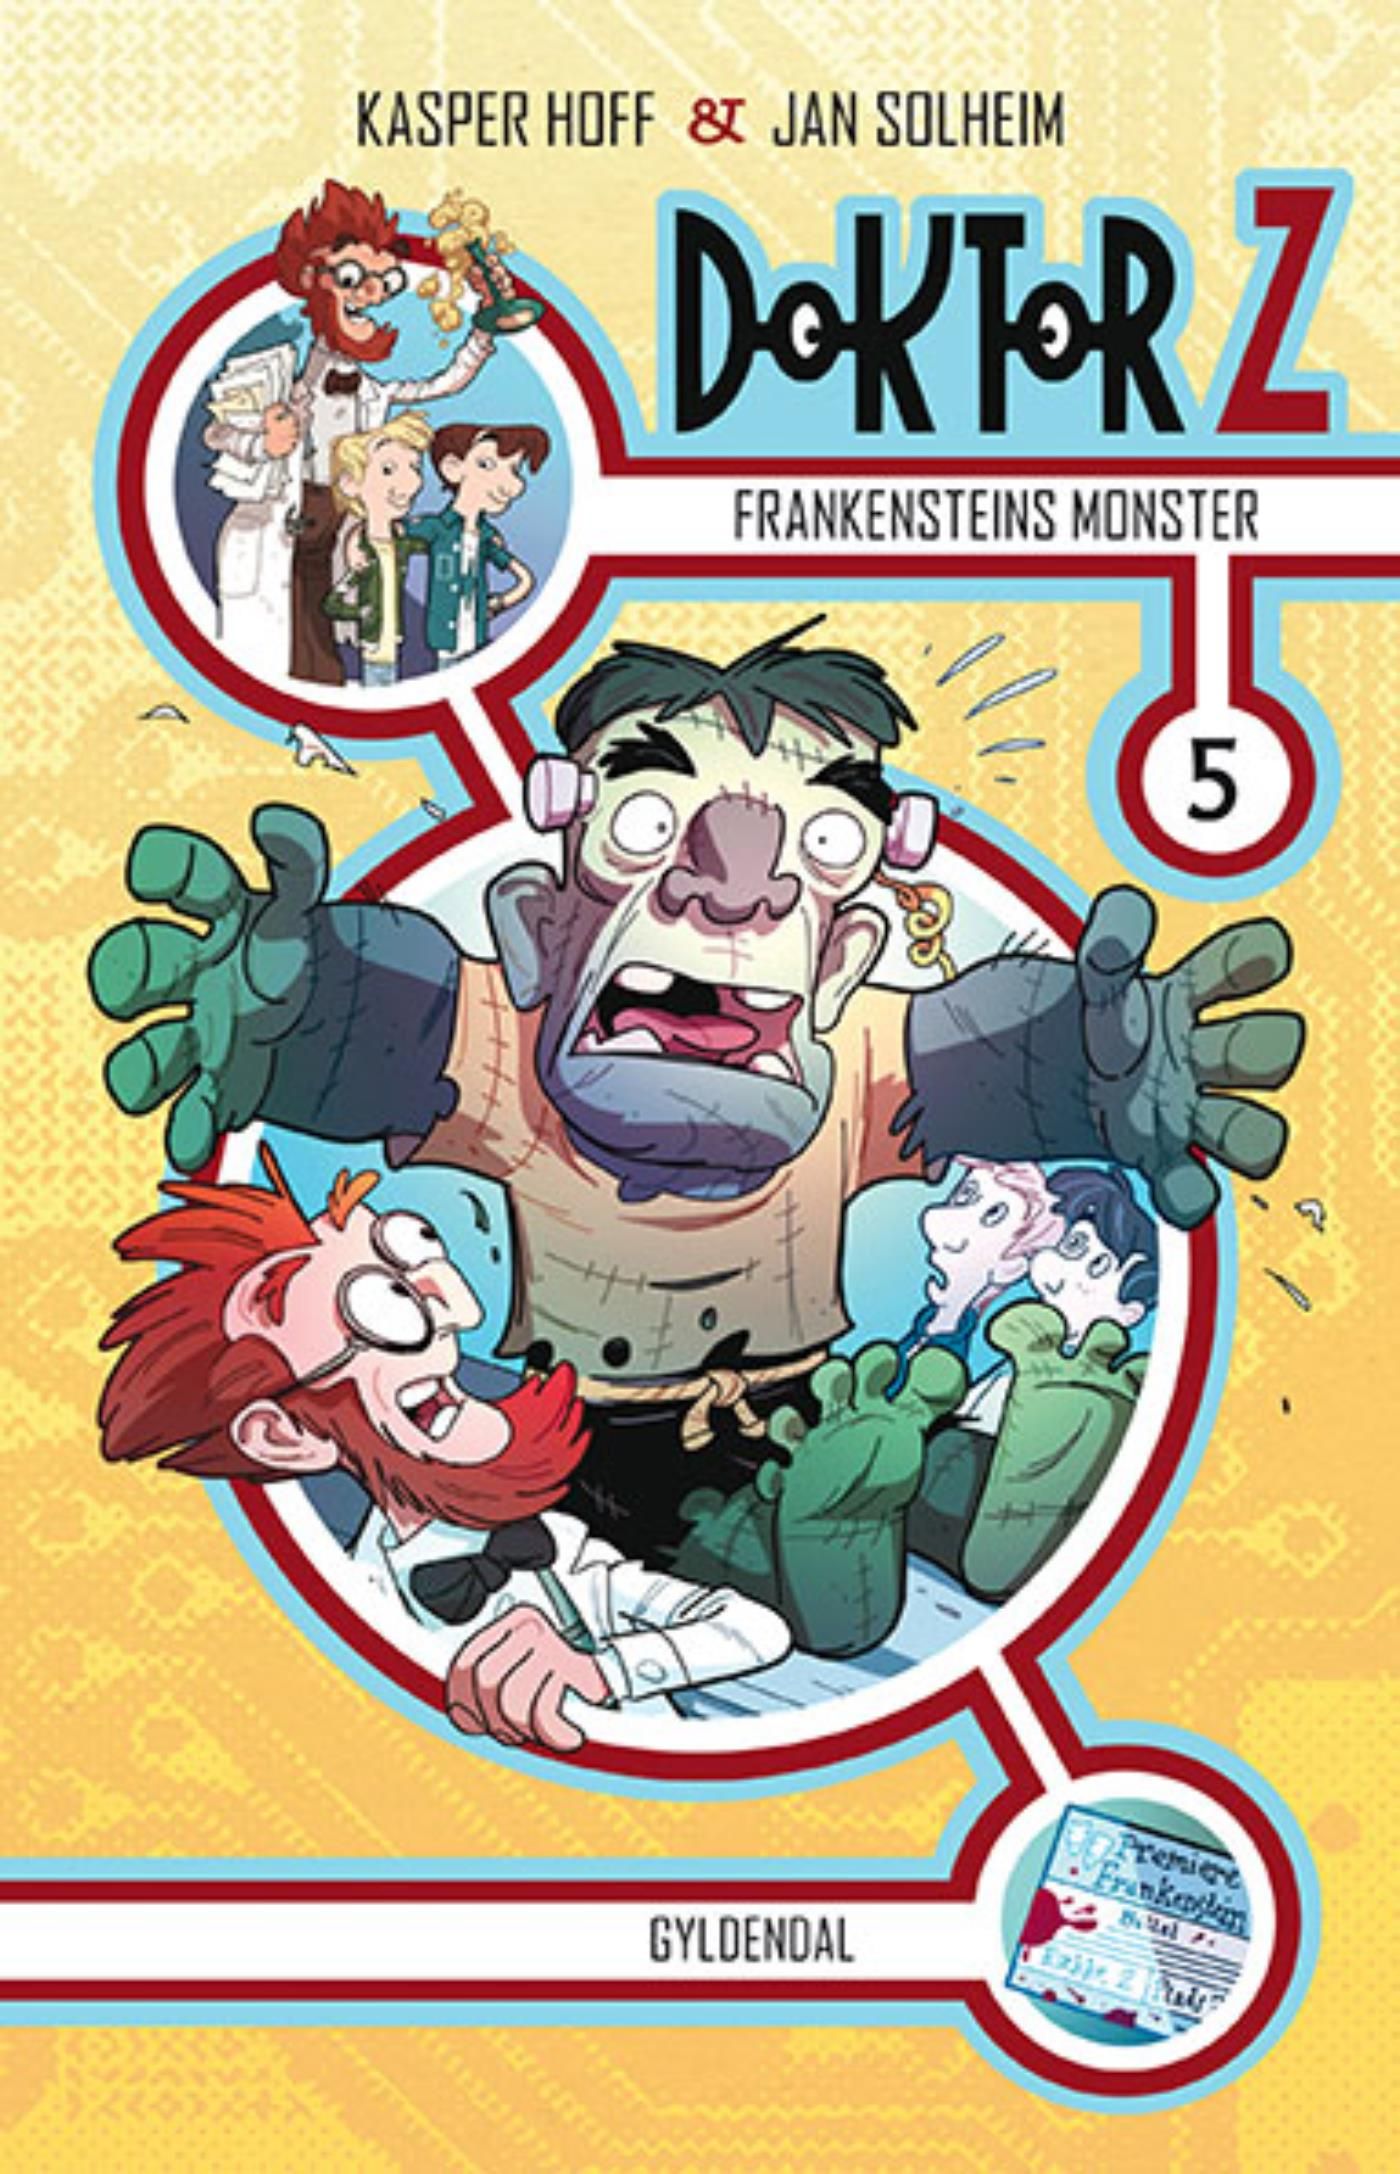 Doktor Z 5 - Frankensteins monster, e-bog af Kasper Hoff